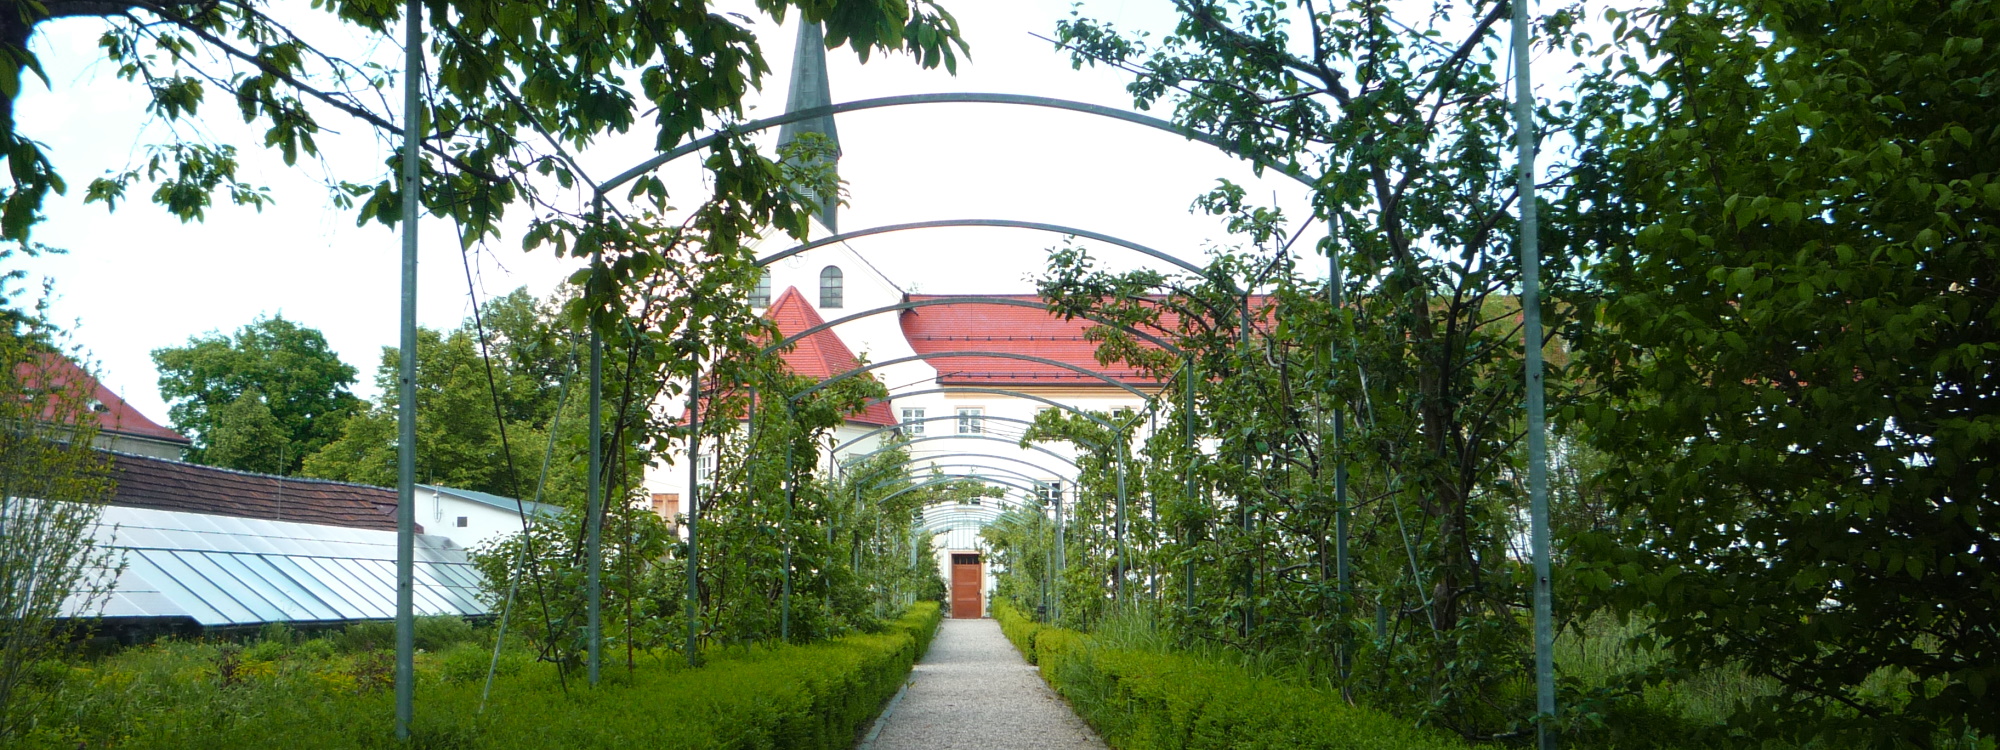 Zum Kapuzinerhof gehört nach wie vor eine großzügig angelegte Gartenanlage mit üppiger Bepflanzung